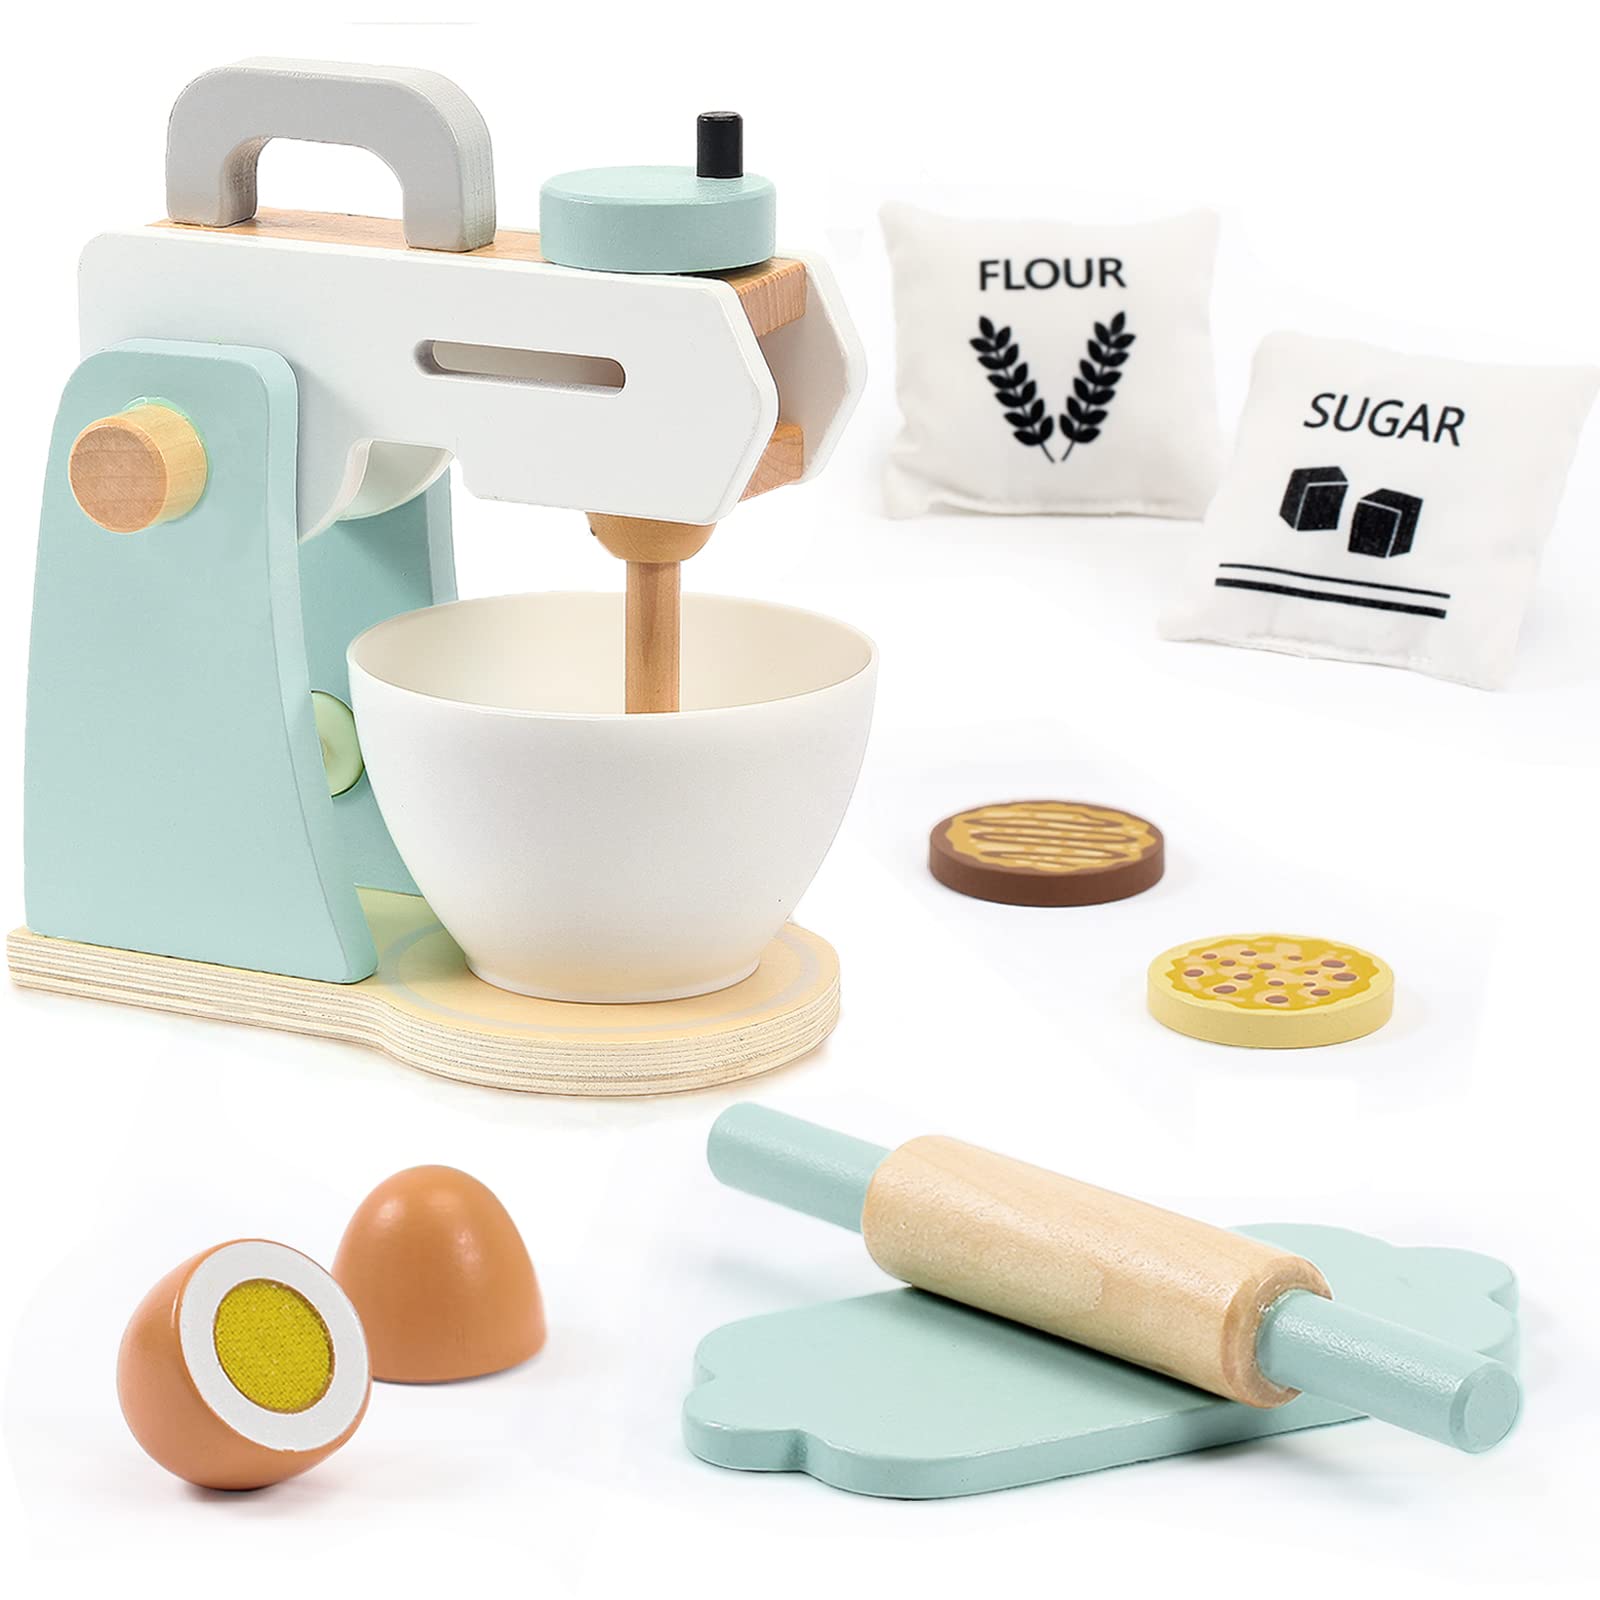 Labebe - Wooden Toy Mixer Set